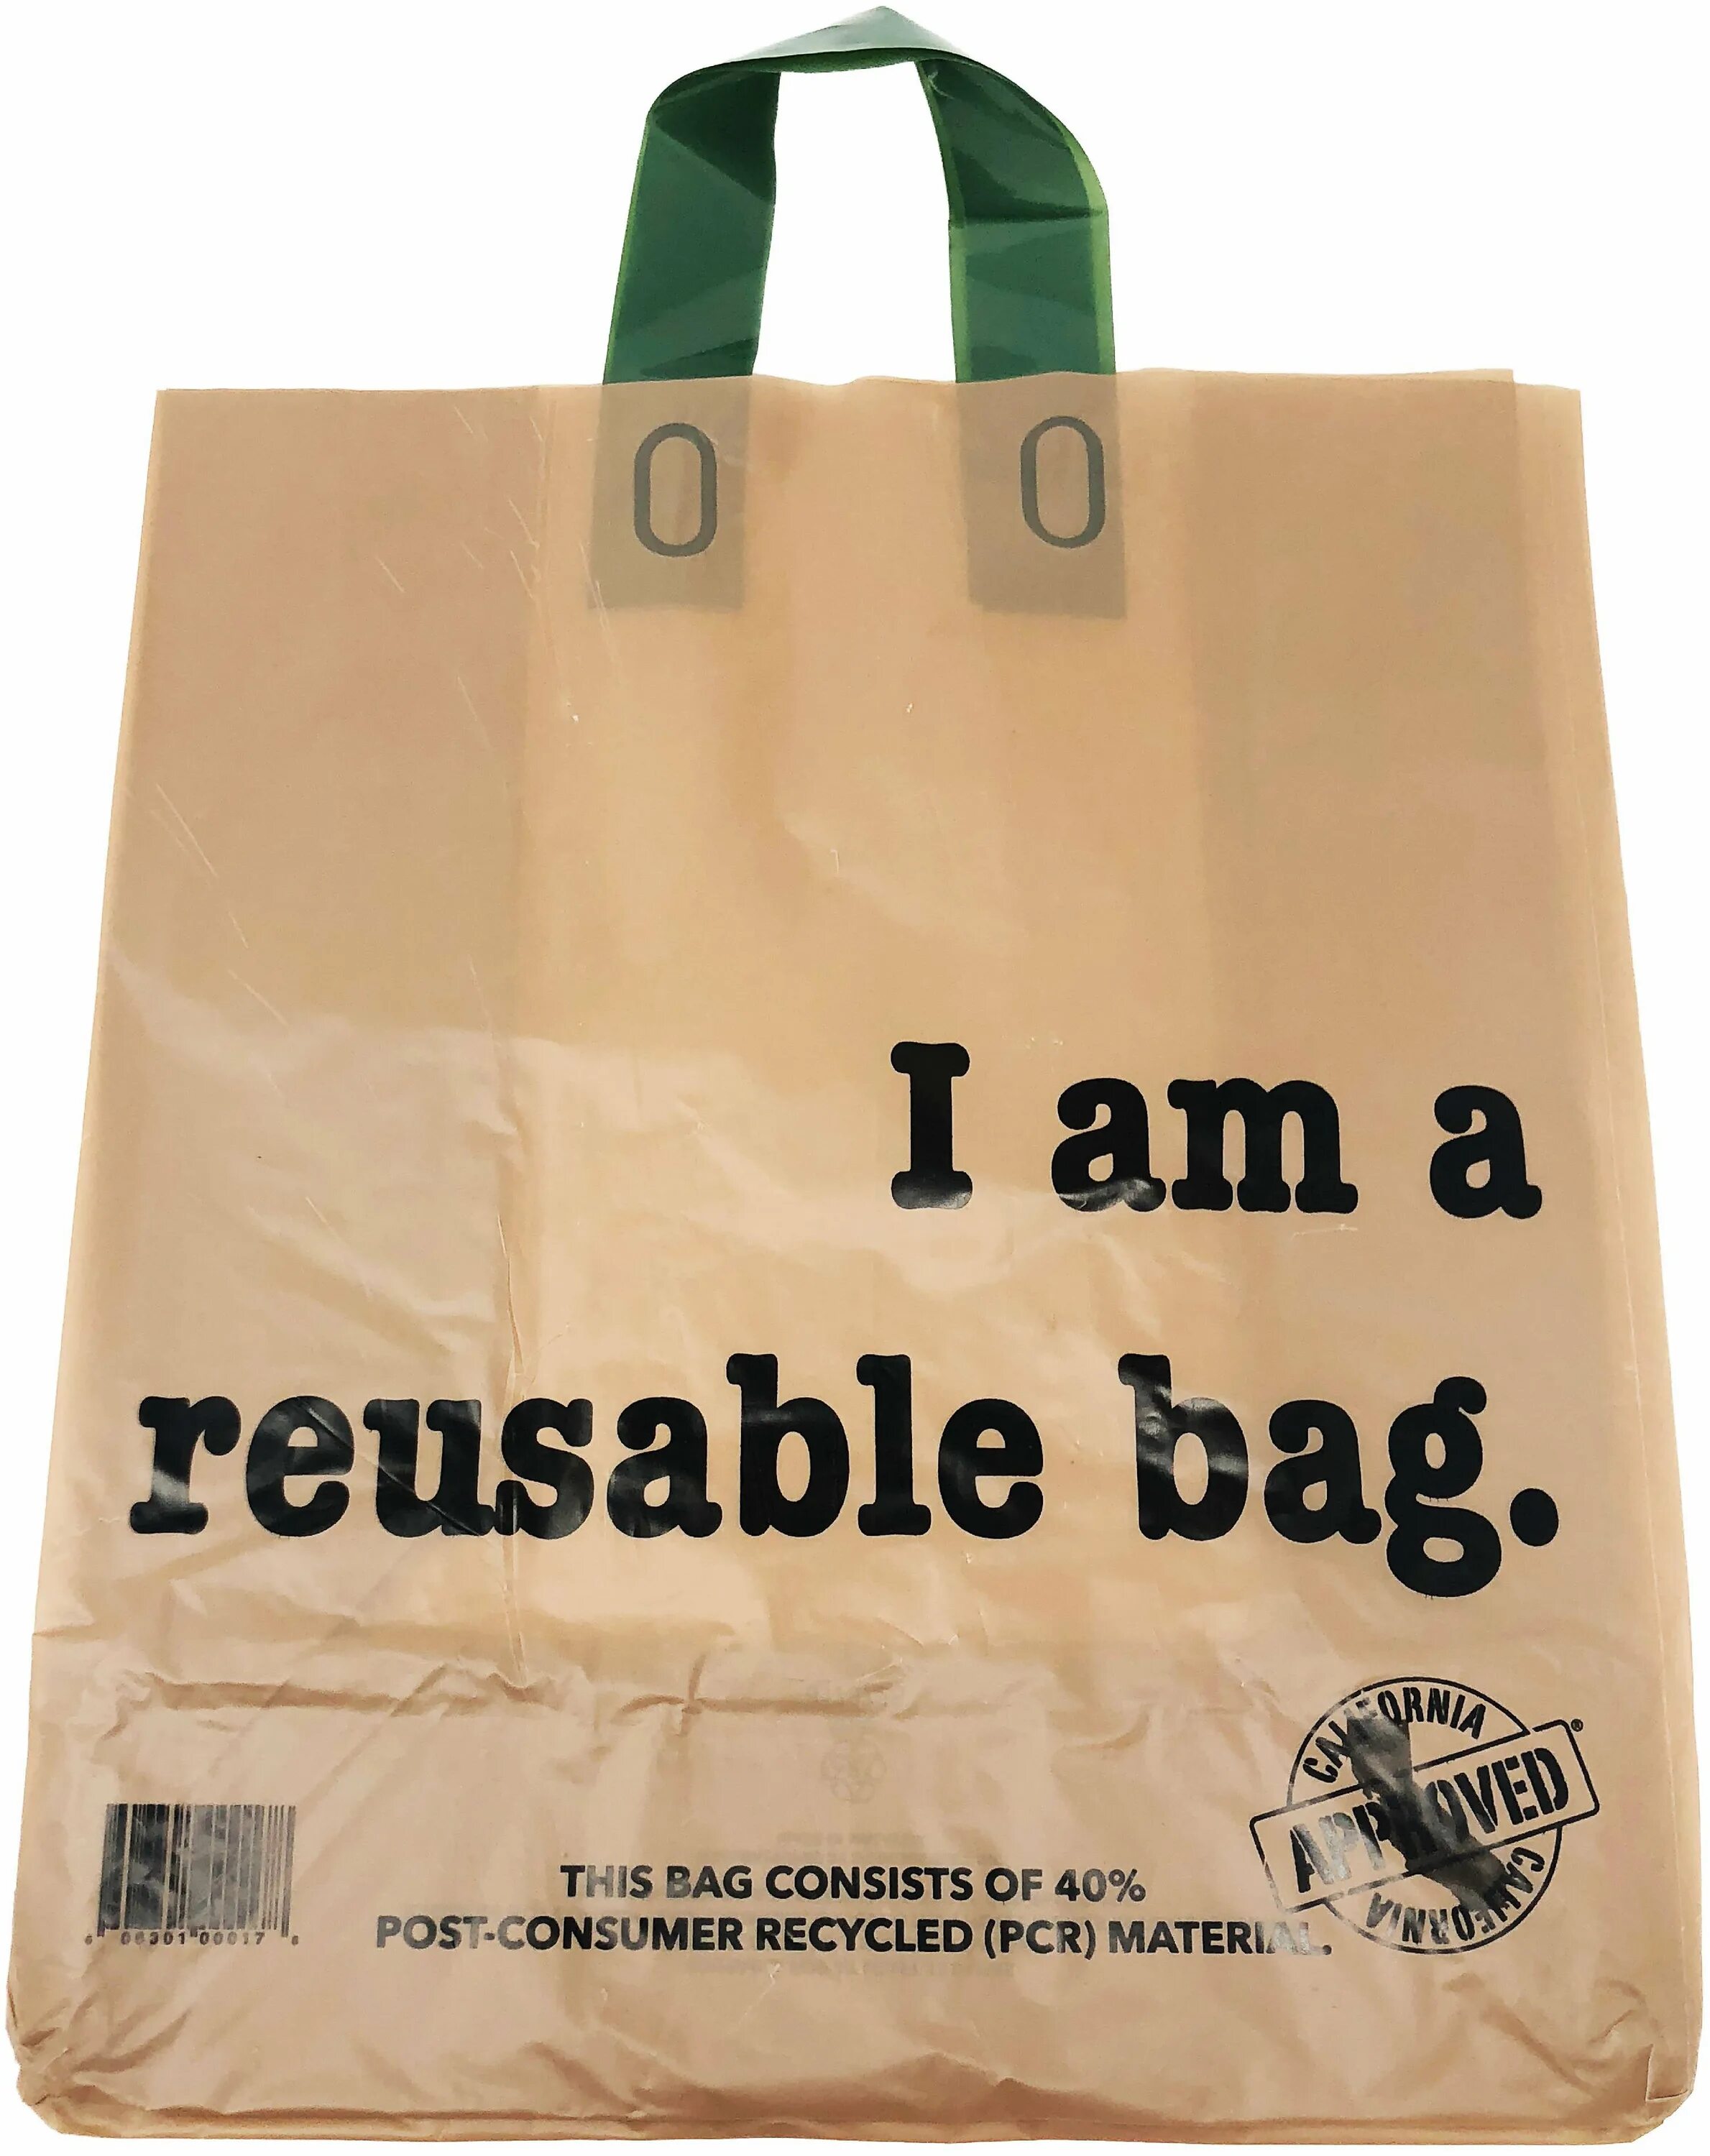 This bag is for. Reusable Bag. Reusable shopping Bags. Шоппинг бэг. Reusable Bags for Shopper.